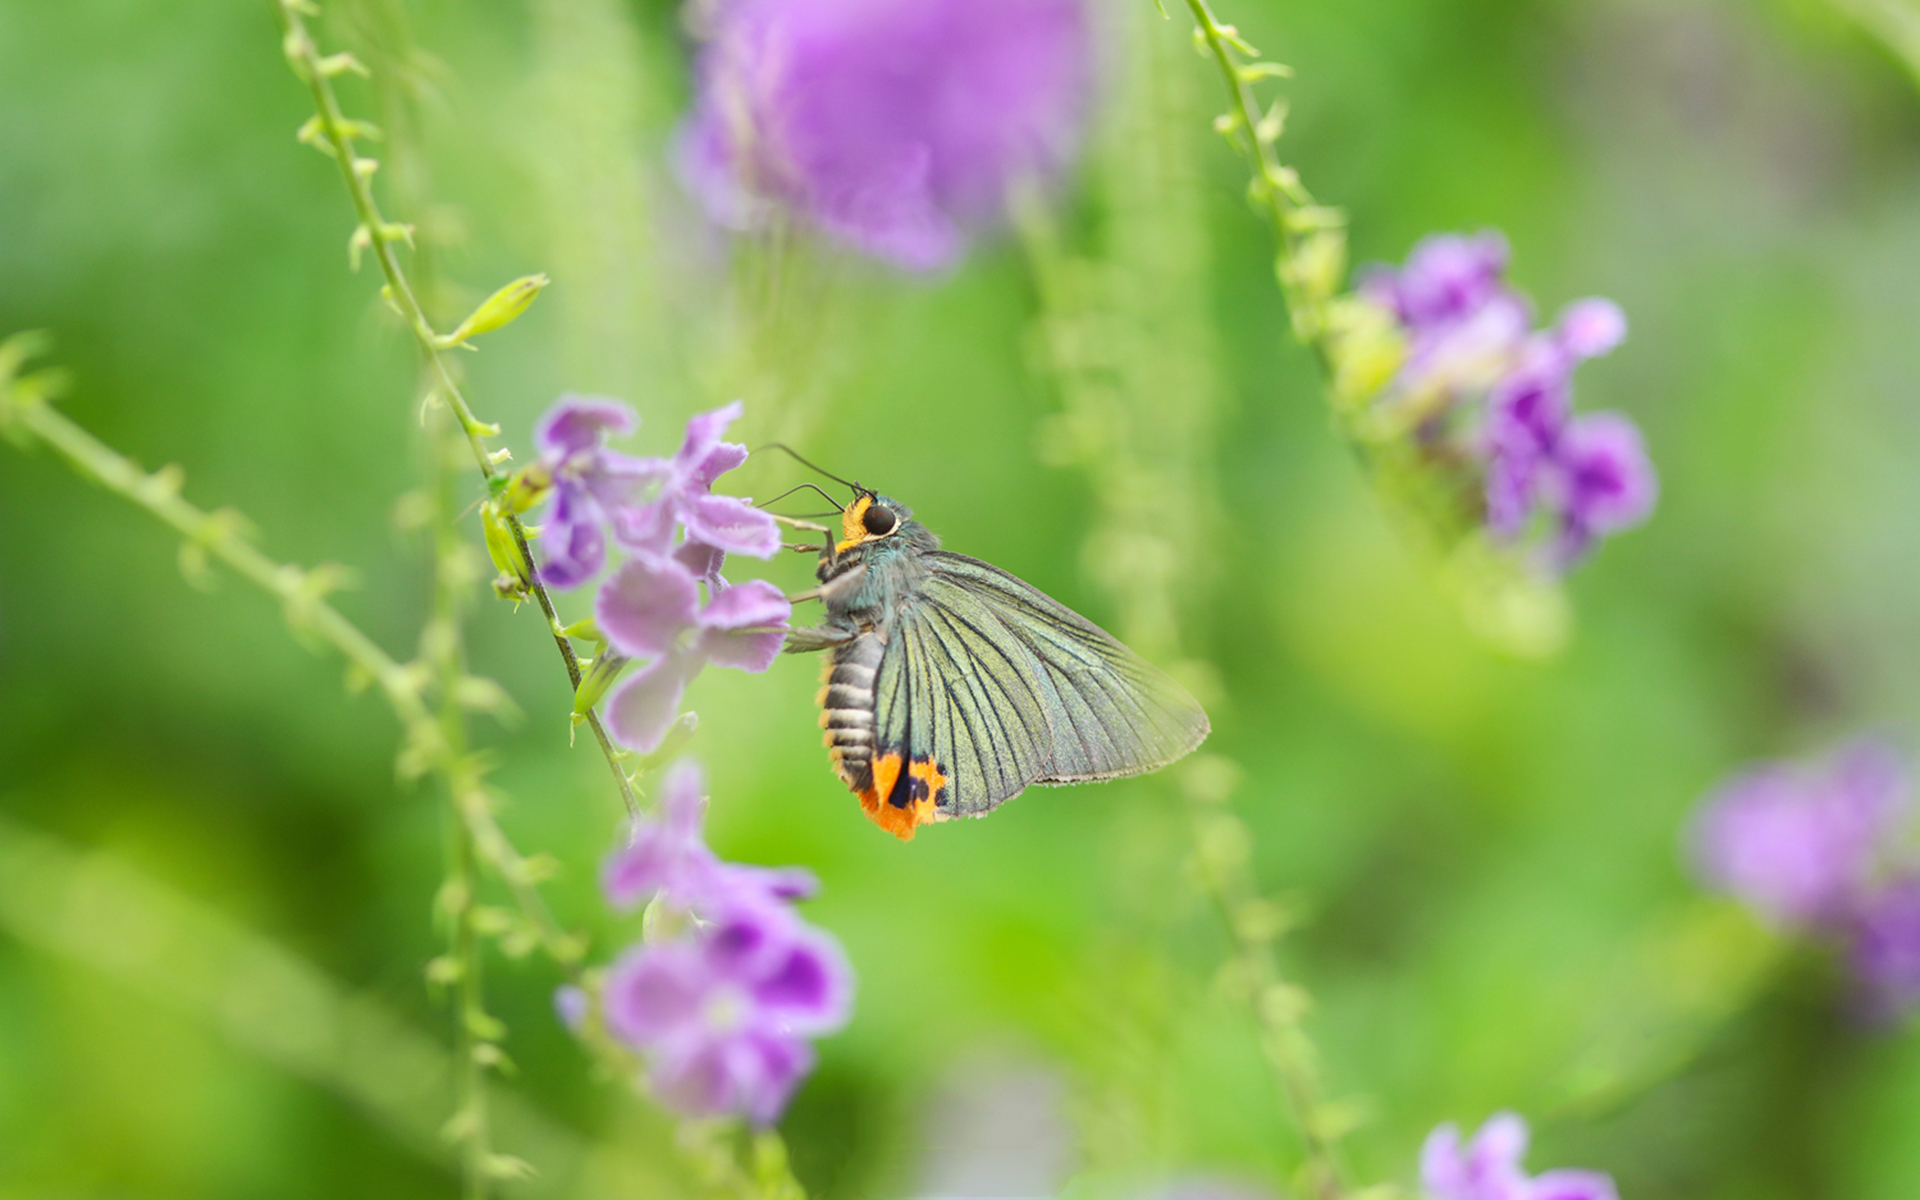 翩翩起舞的蝴蝶与花 - 免费可商用图片 - cc0.cn